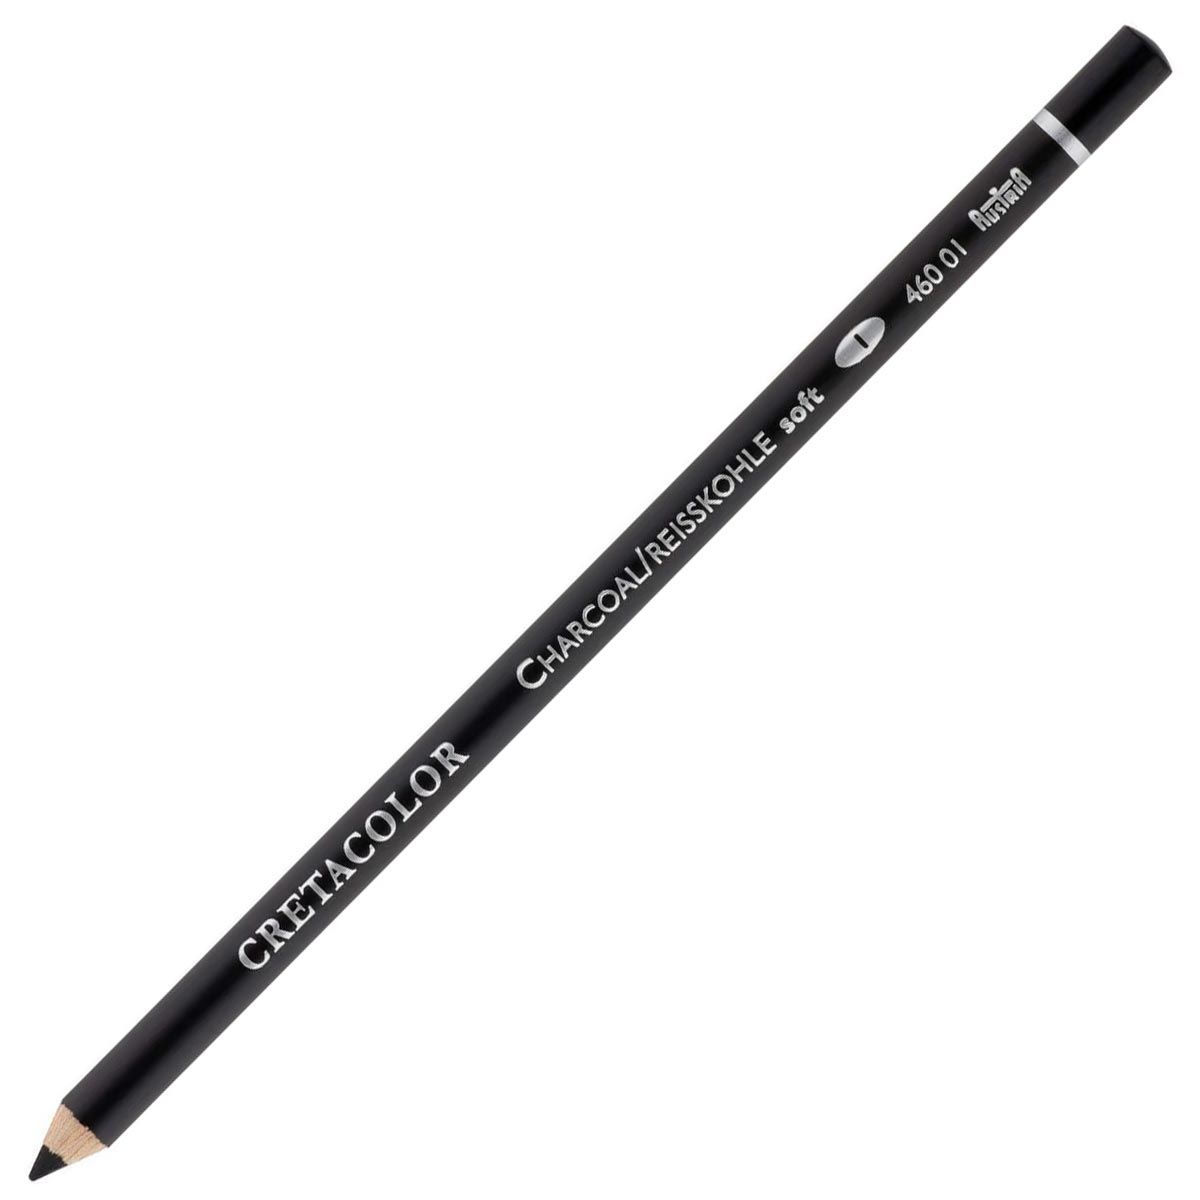 Cretacolor Charcoal Pencil - Soft